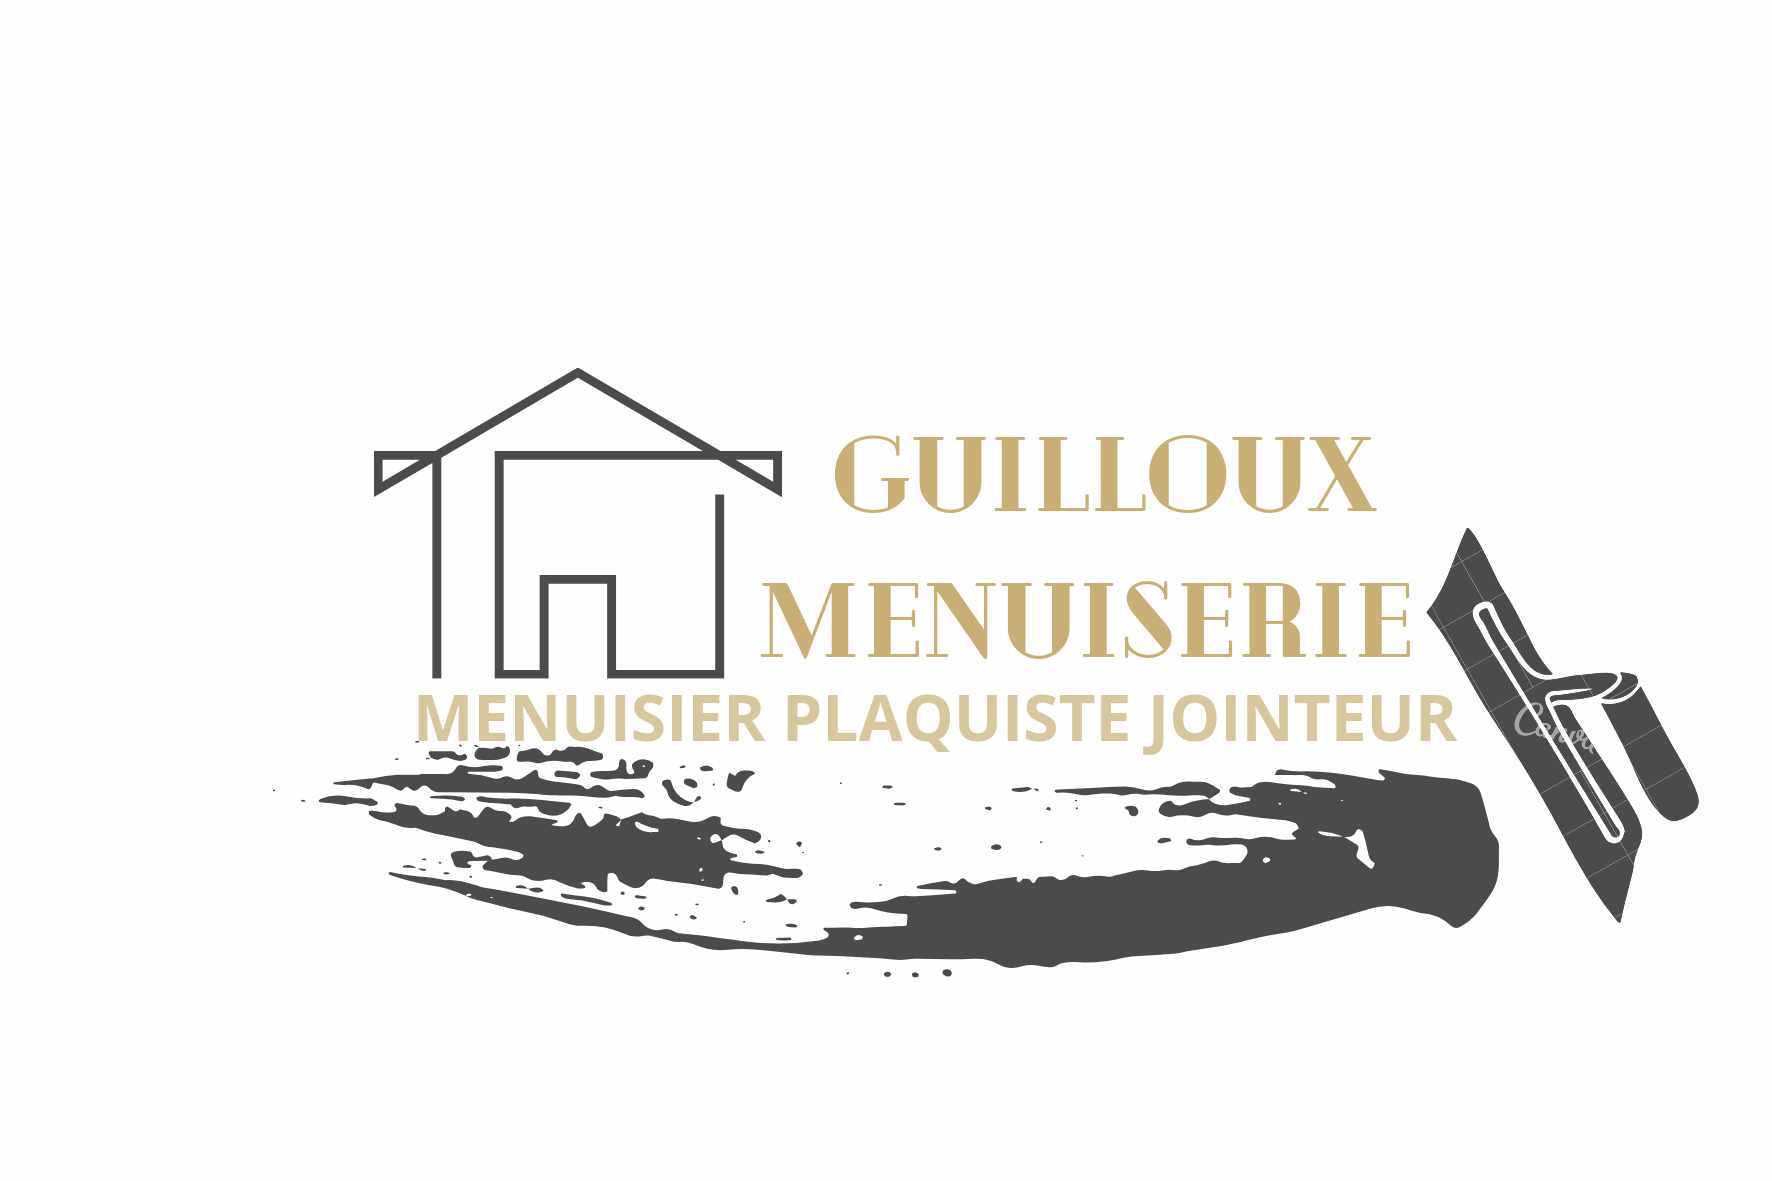 Guilloux Menuiserie